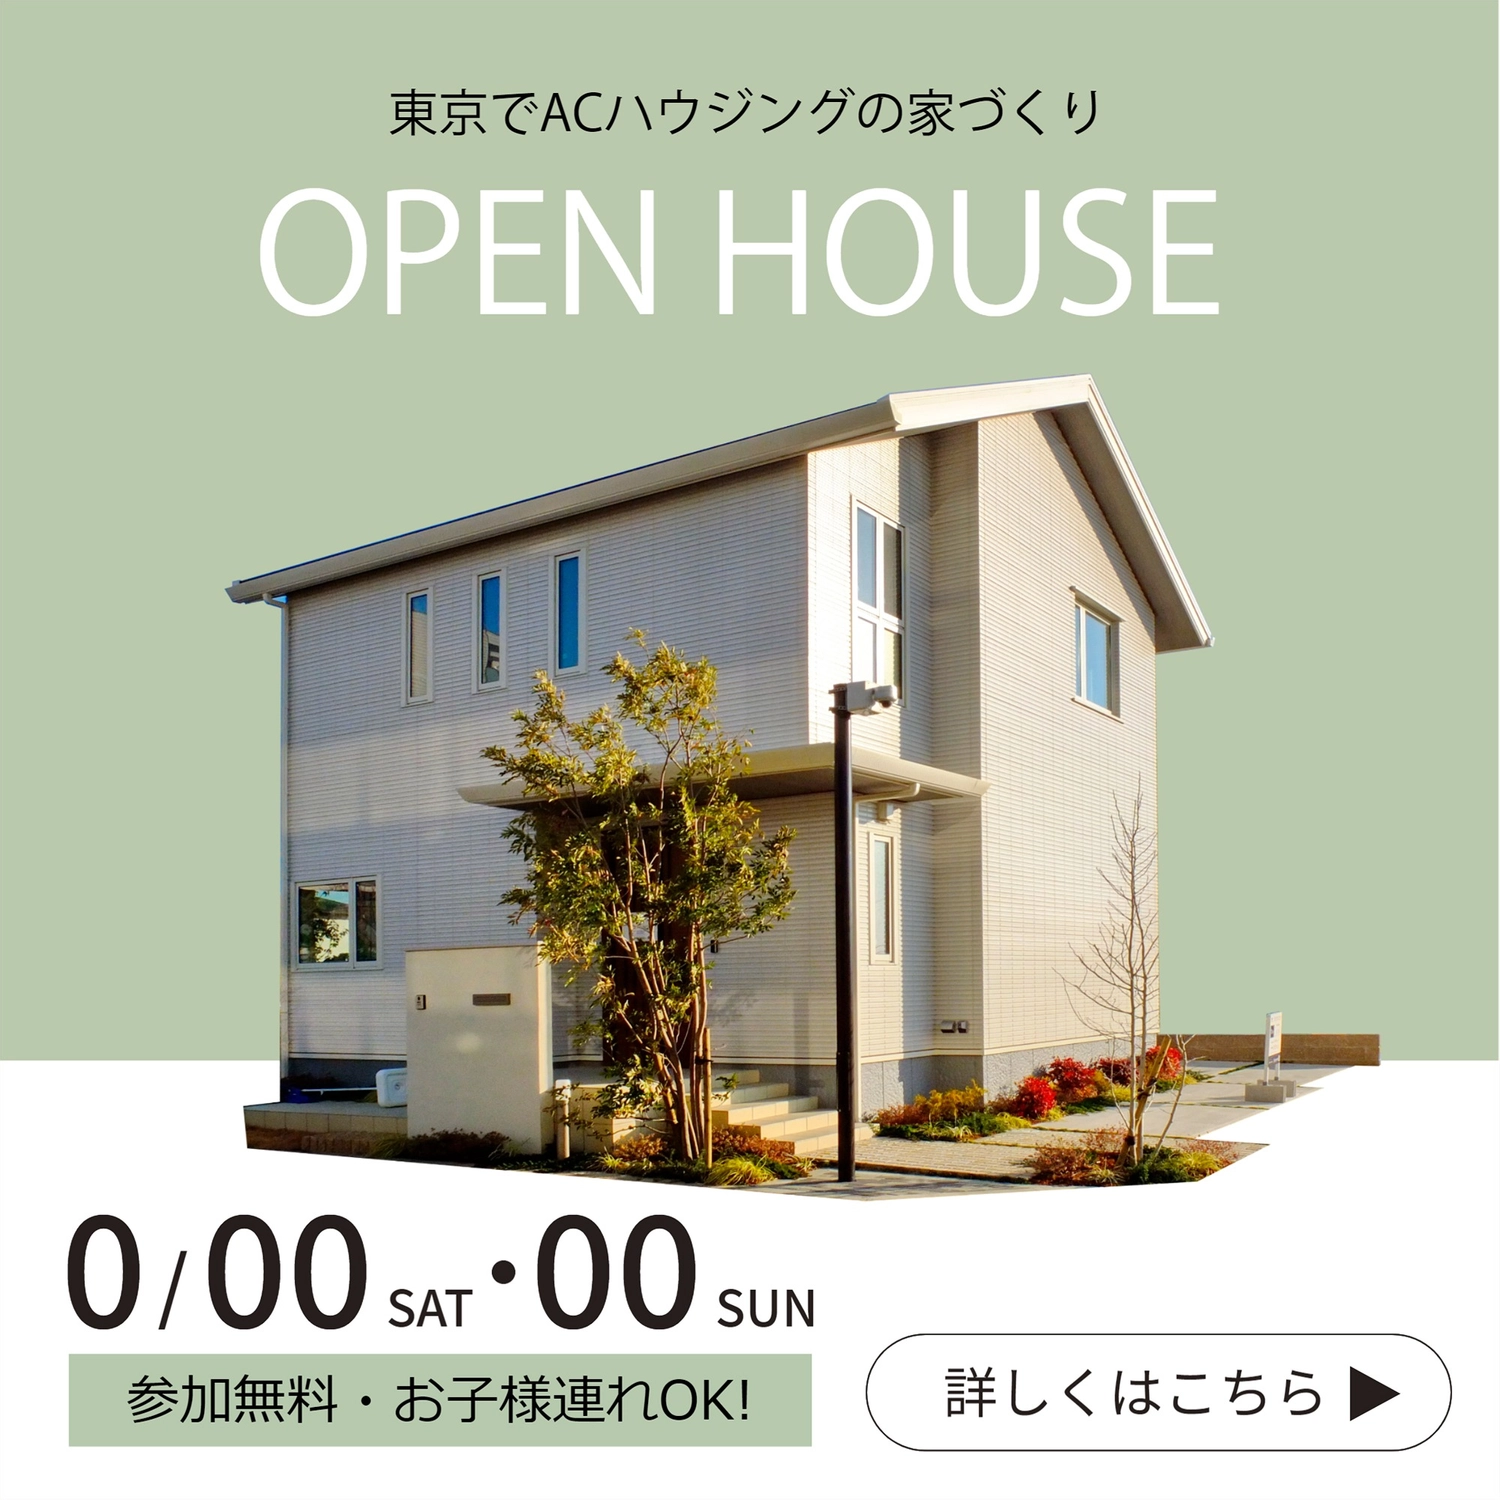 オープンハウス広告, チラシ, 緑, カラー背景, Instagram広告テンプレート